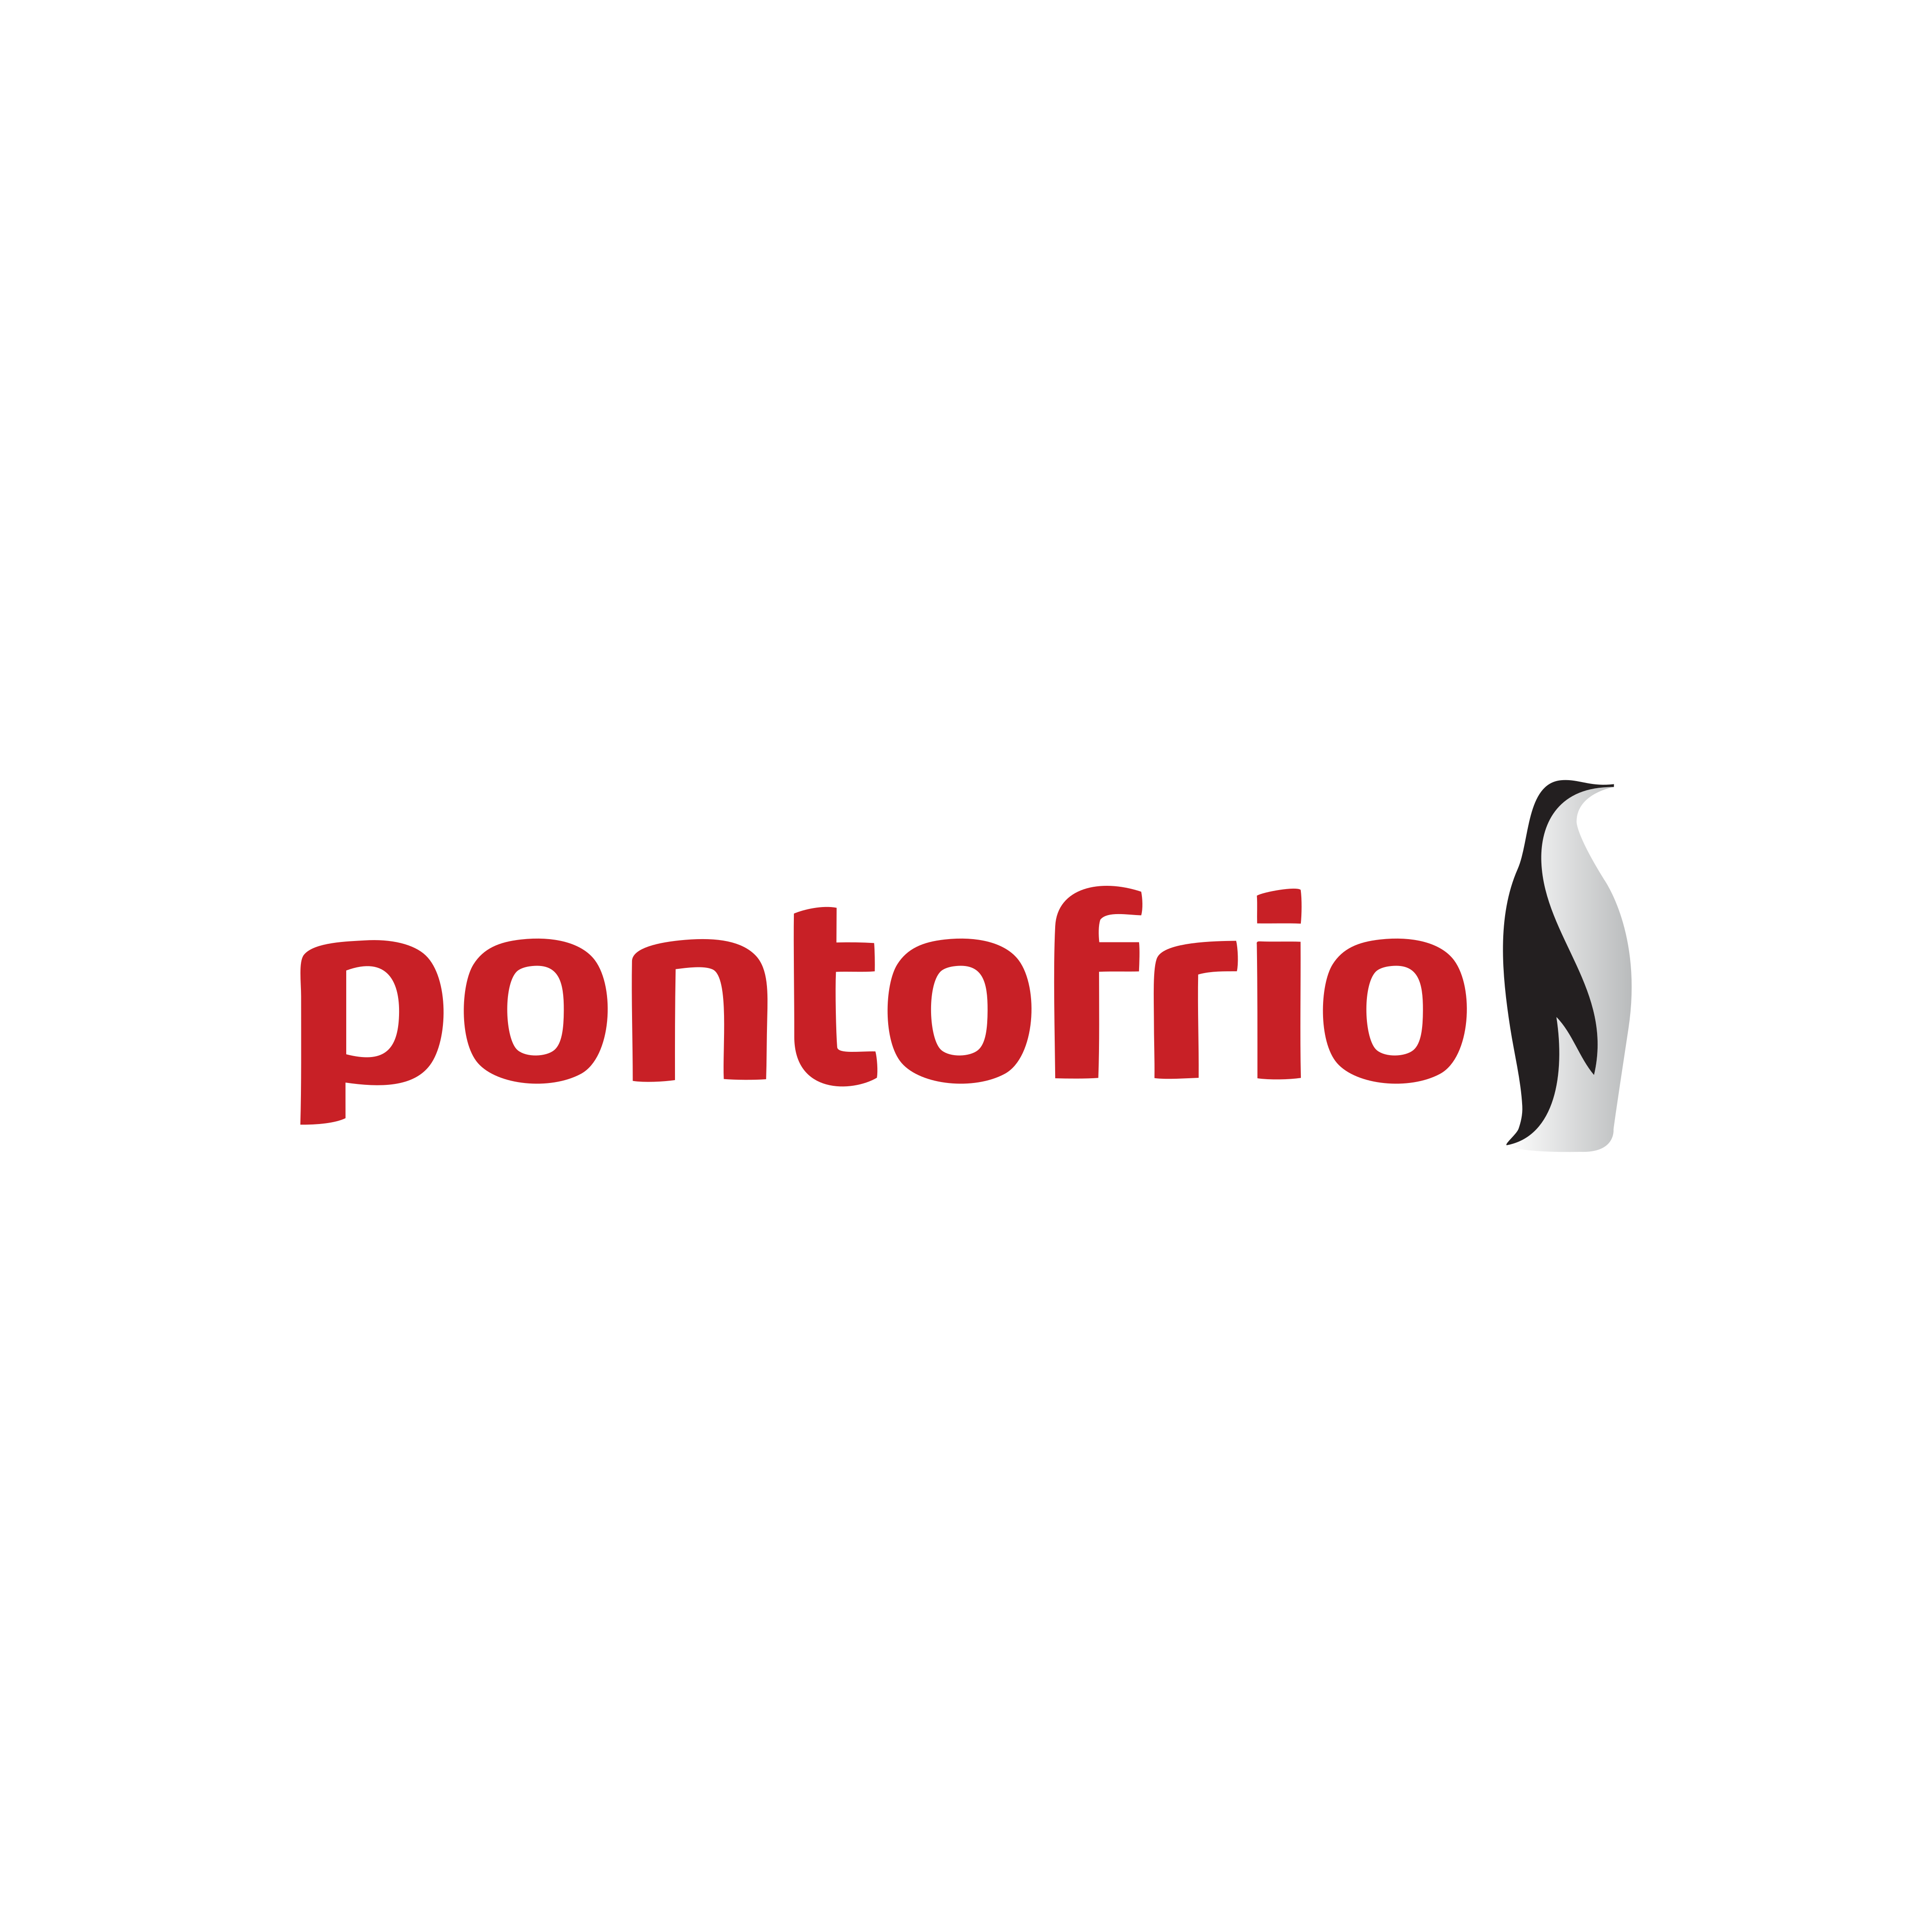 Pontofrio Logo PNG.